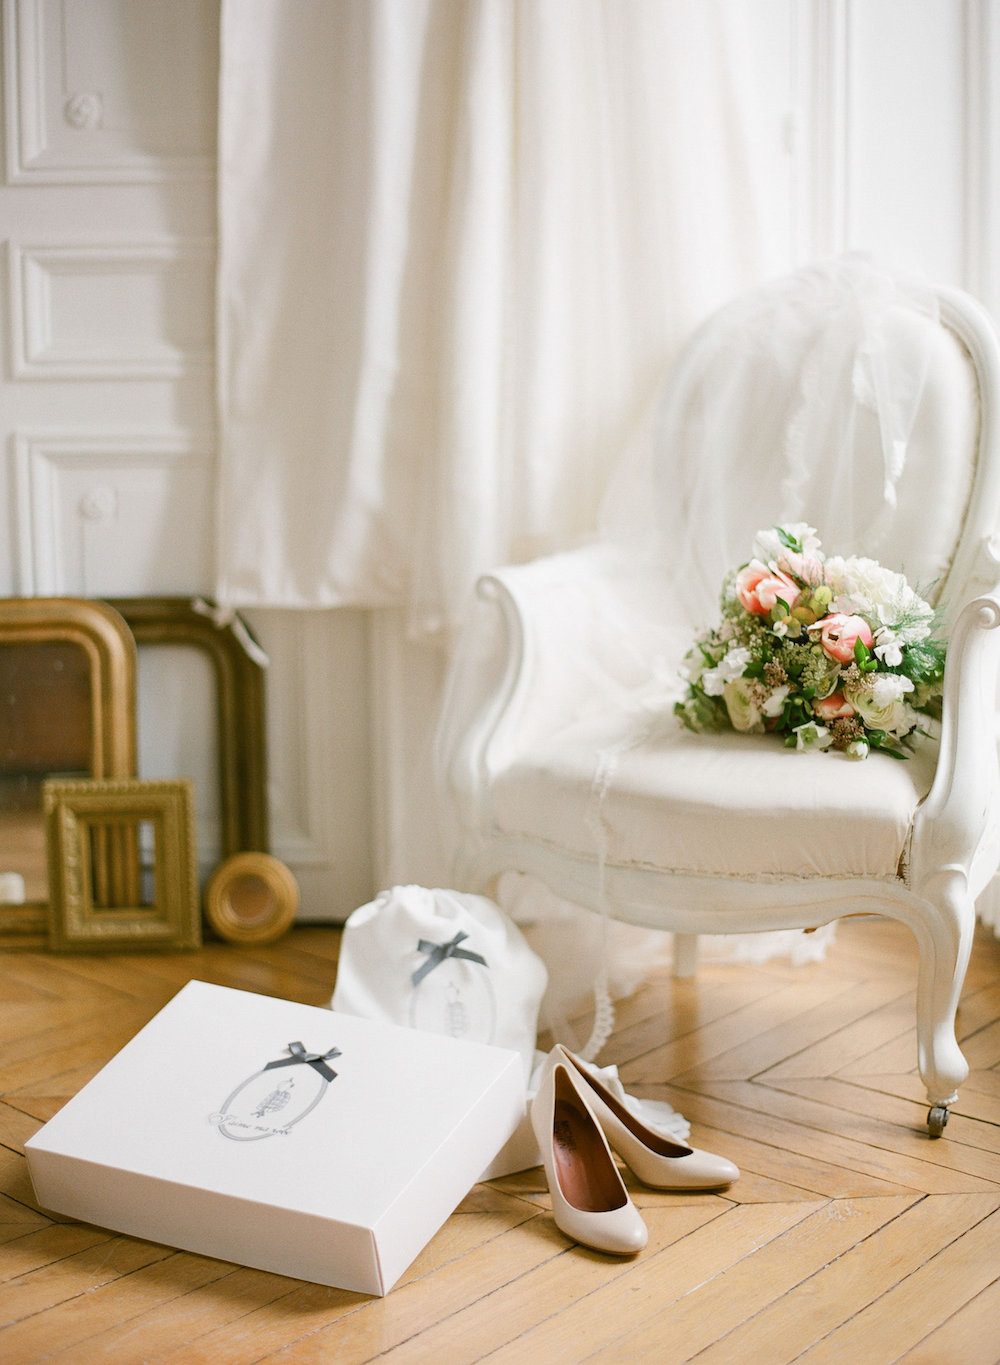 10 Conseils pour conserver sa robe de mariée - Blog Mariage Madame C